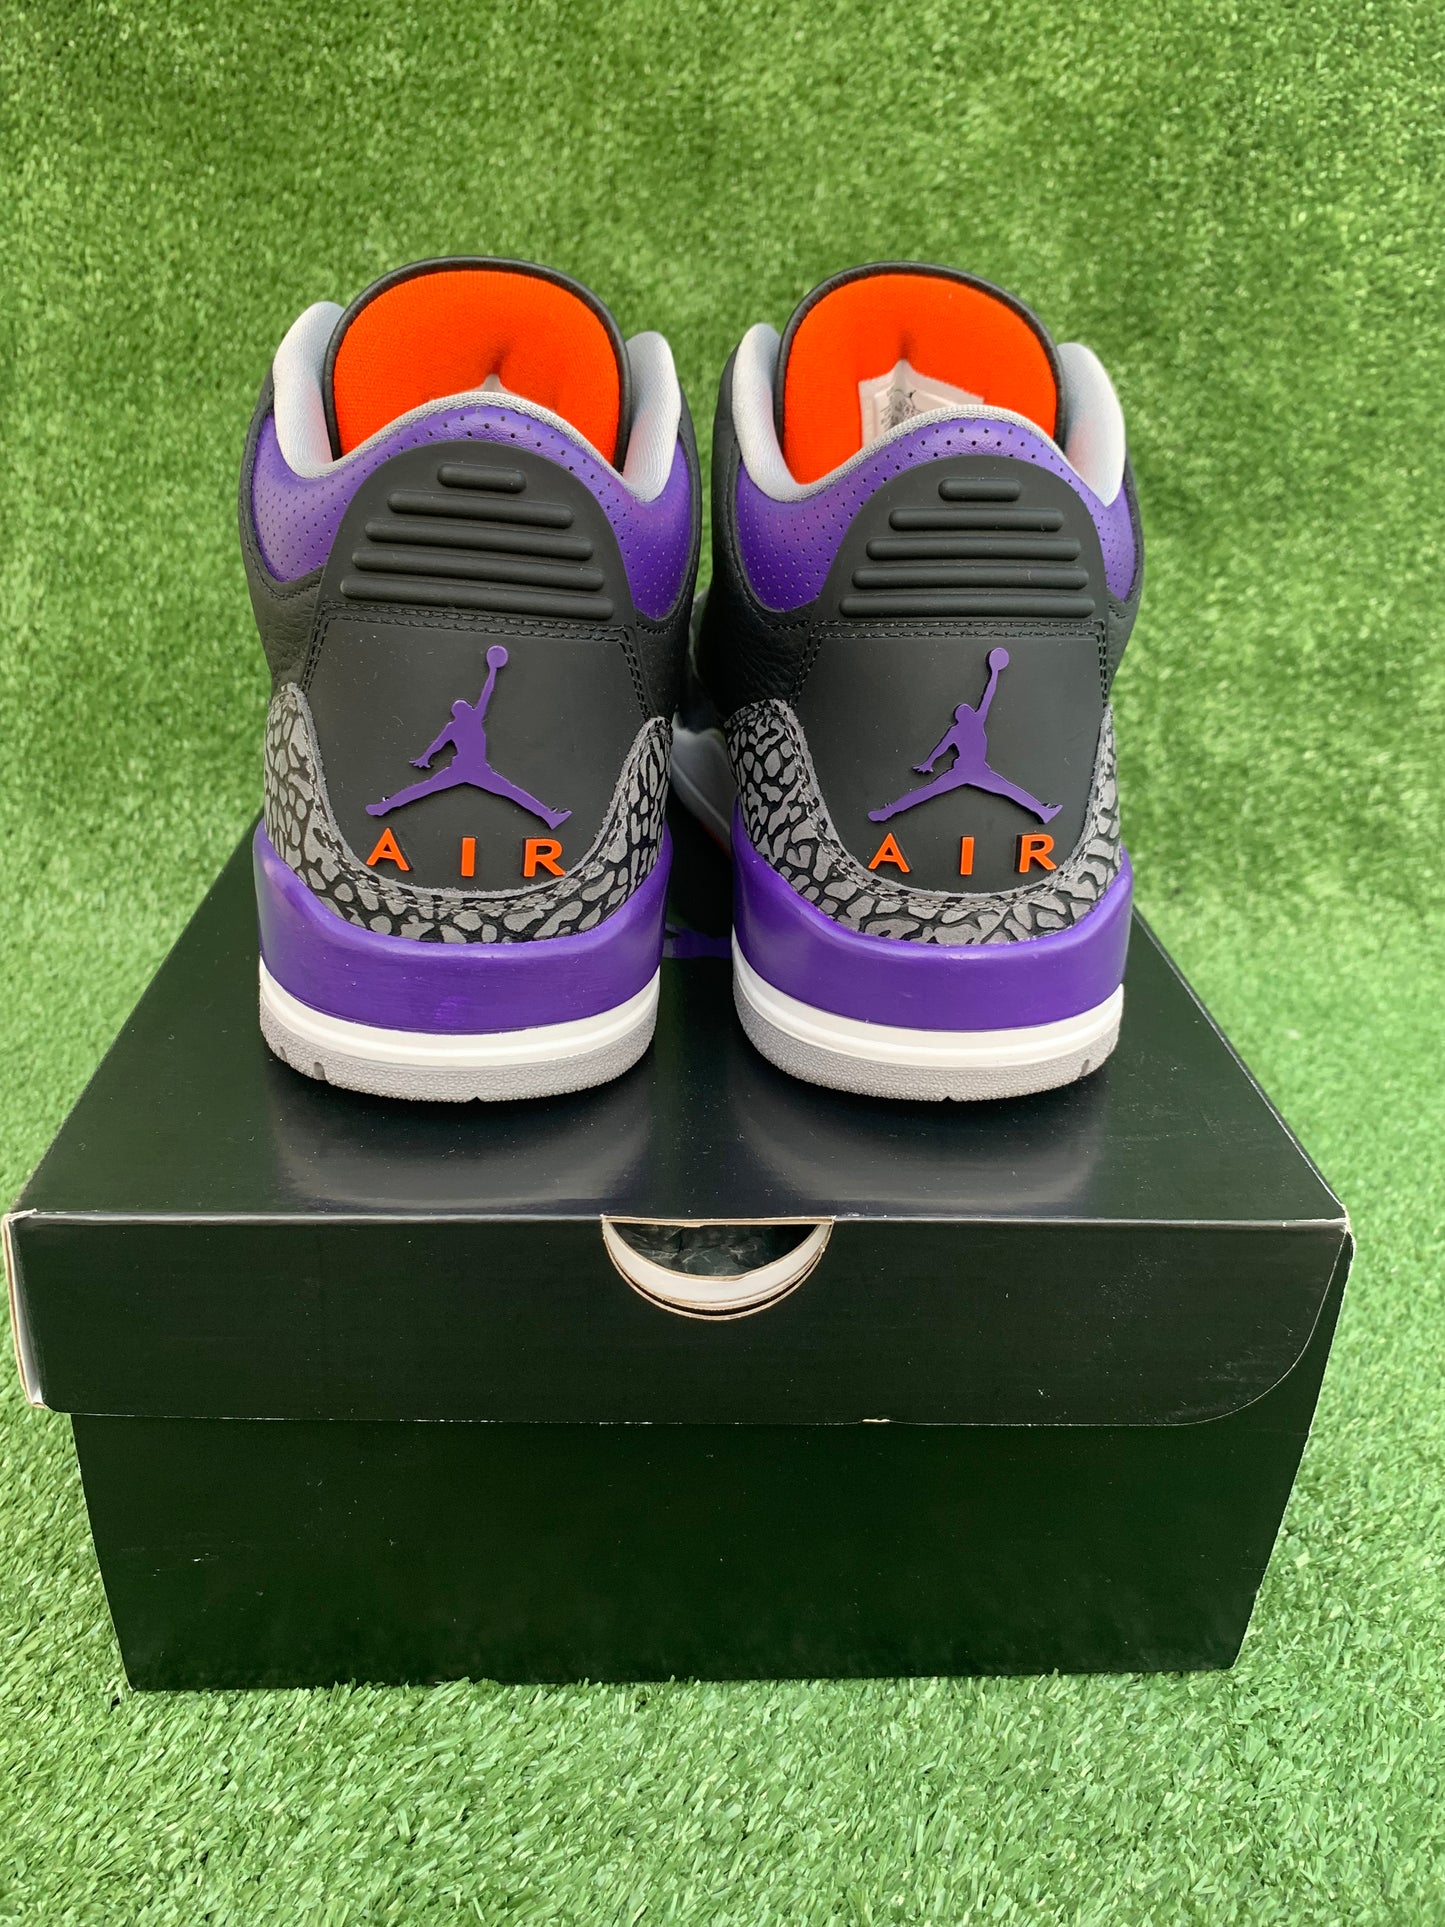 Jordan 3 - Court Purple [US9 - USED]